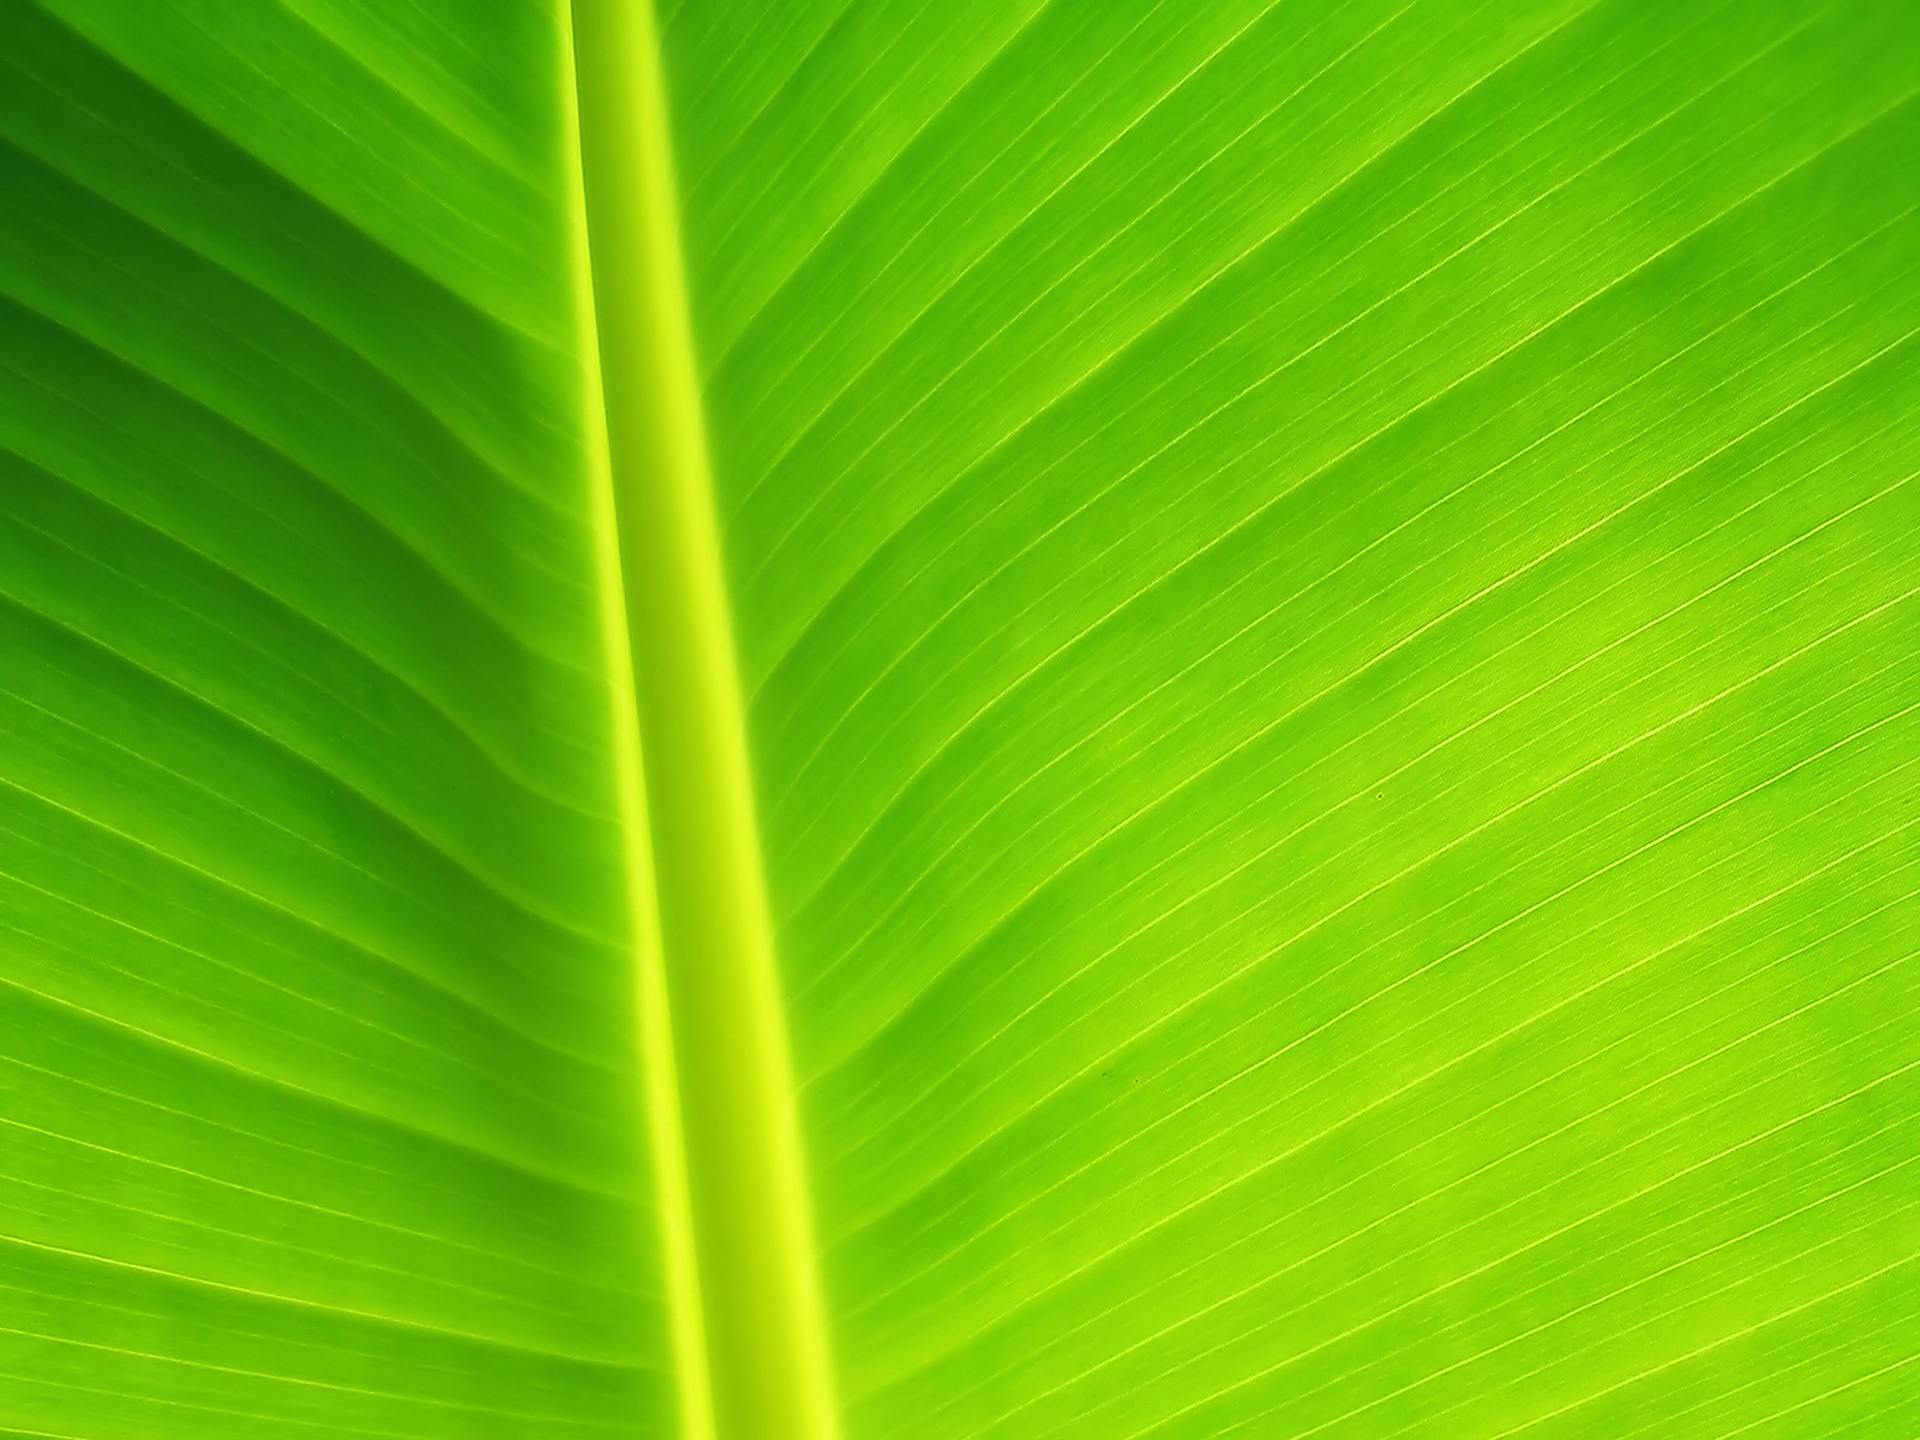  Banana  Leaf  Images Free PixelsTalk Net